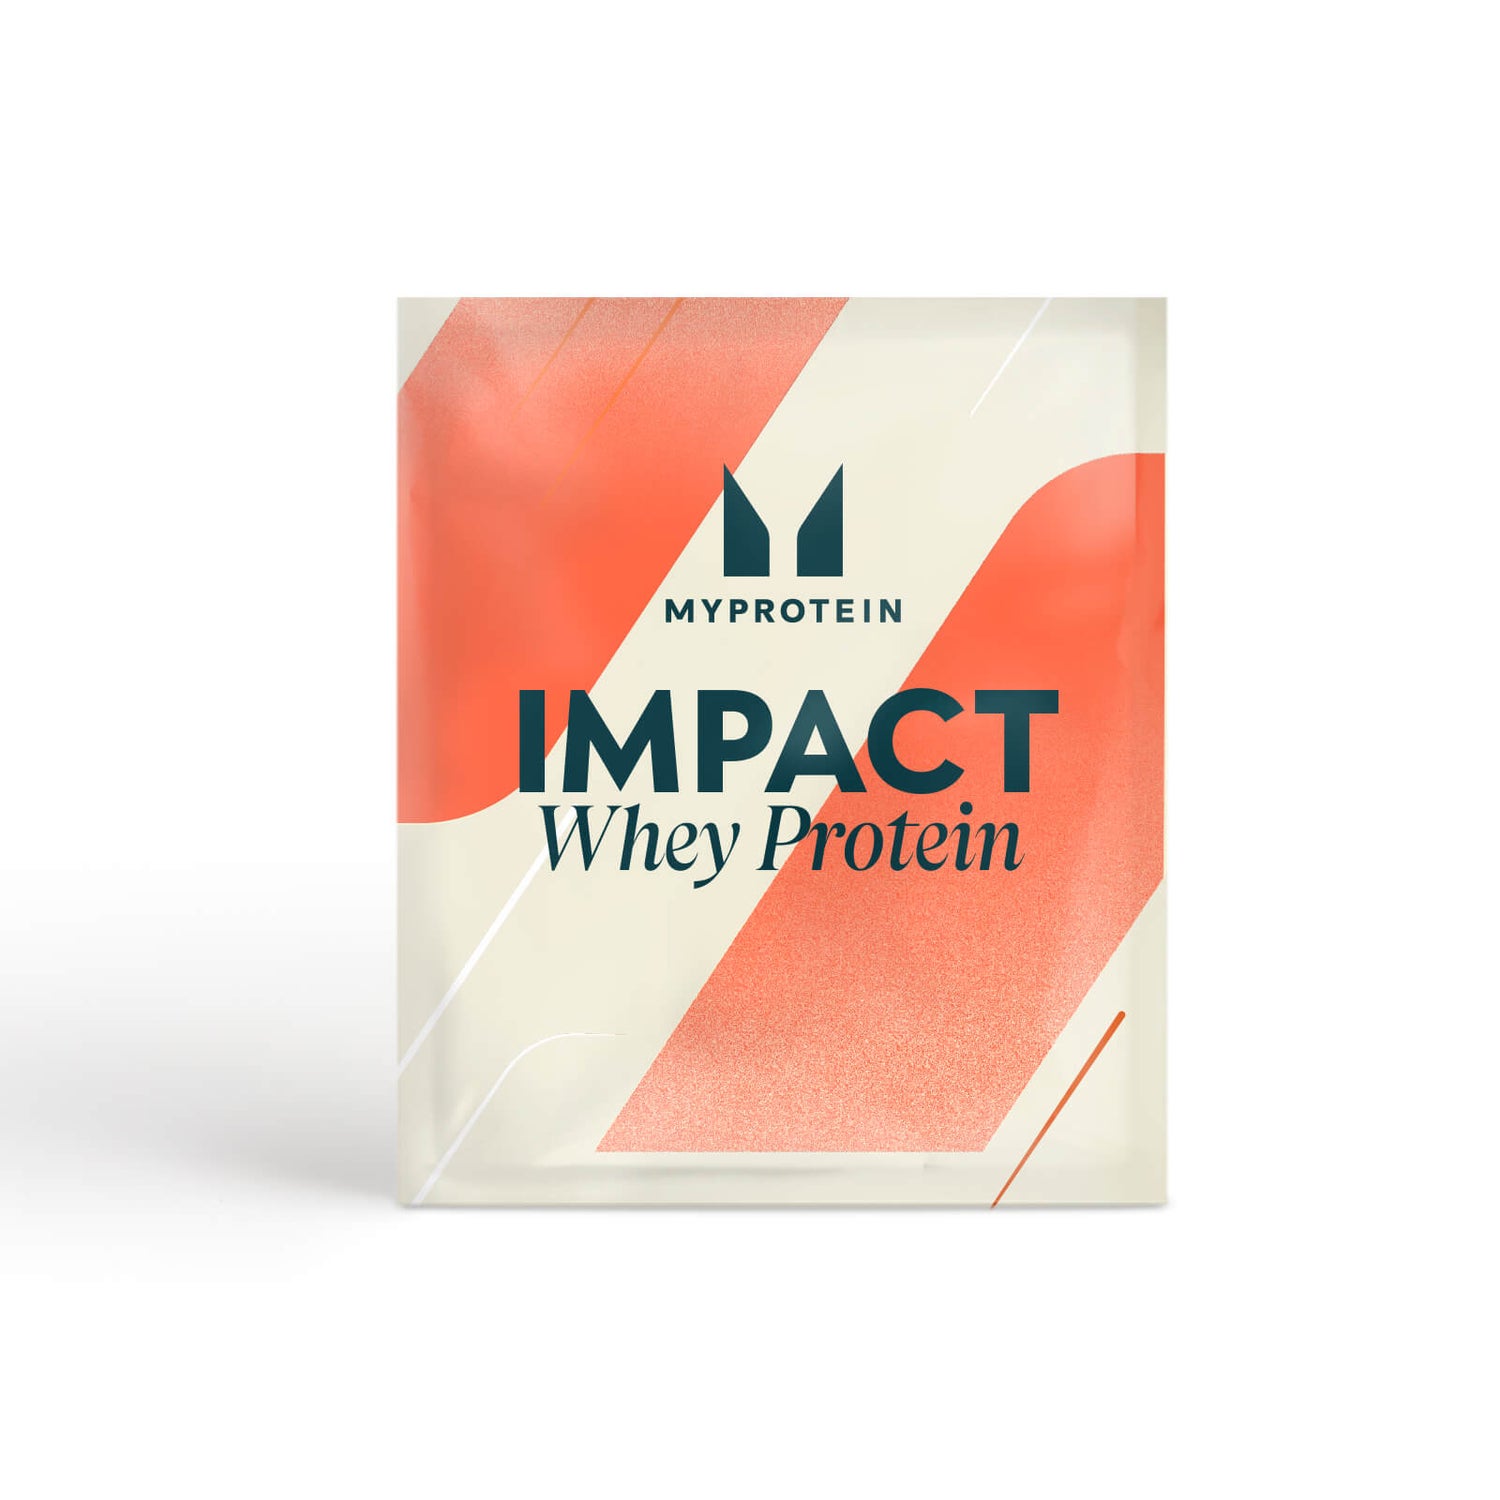 Impact Whey Protein – Pistache-roomijssmaak (proefverpakking)